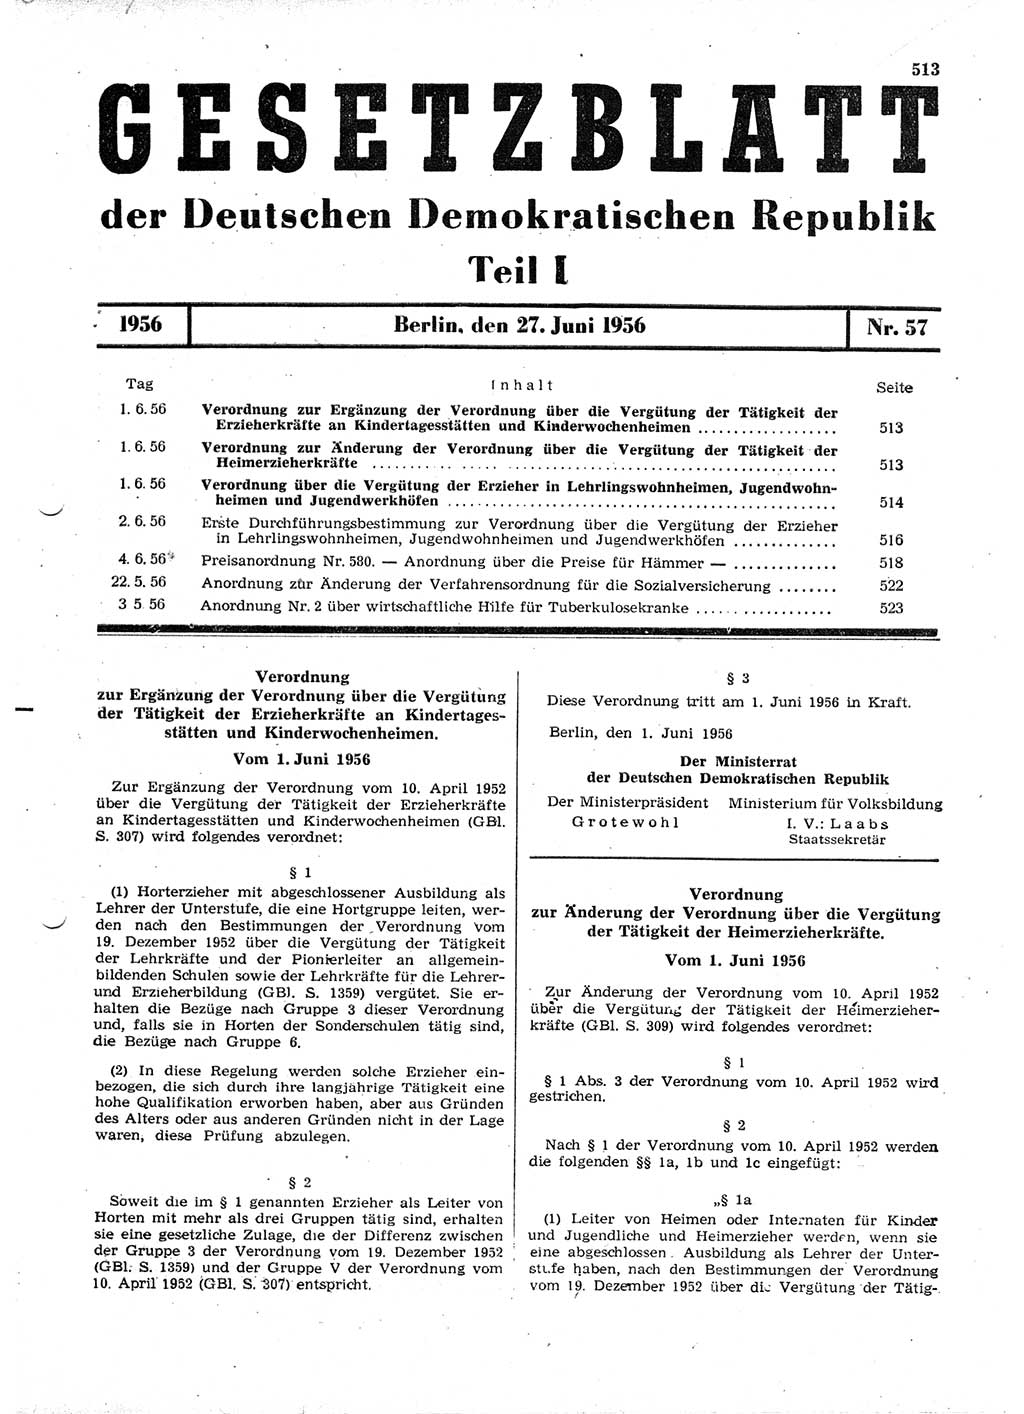 Gesetzblatt (GBl.) der Deutschen Demokratischen Republik (DDR) Teil Ⅰ 1956, Seite 513 (GBl. DDR Ⅰ 1956, S. 513)